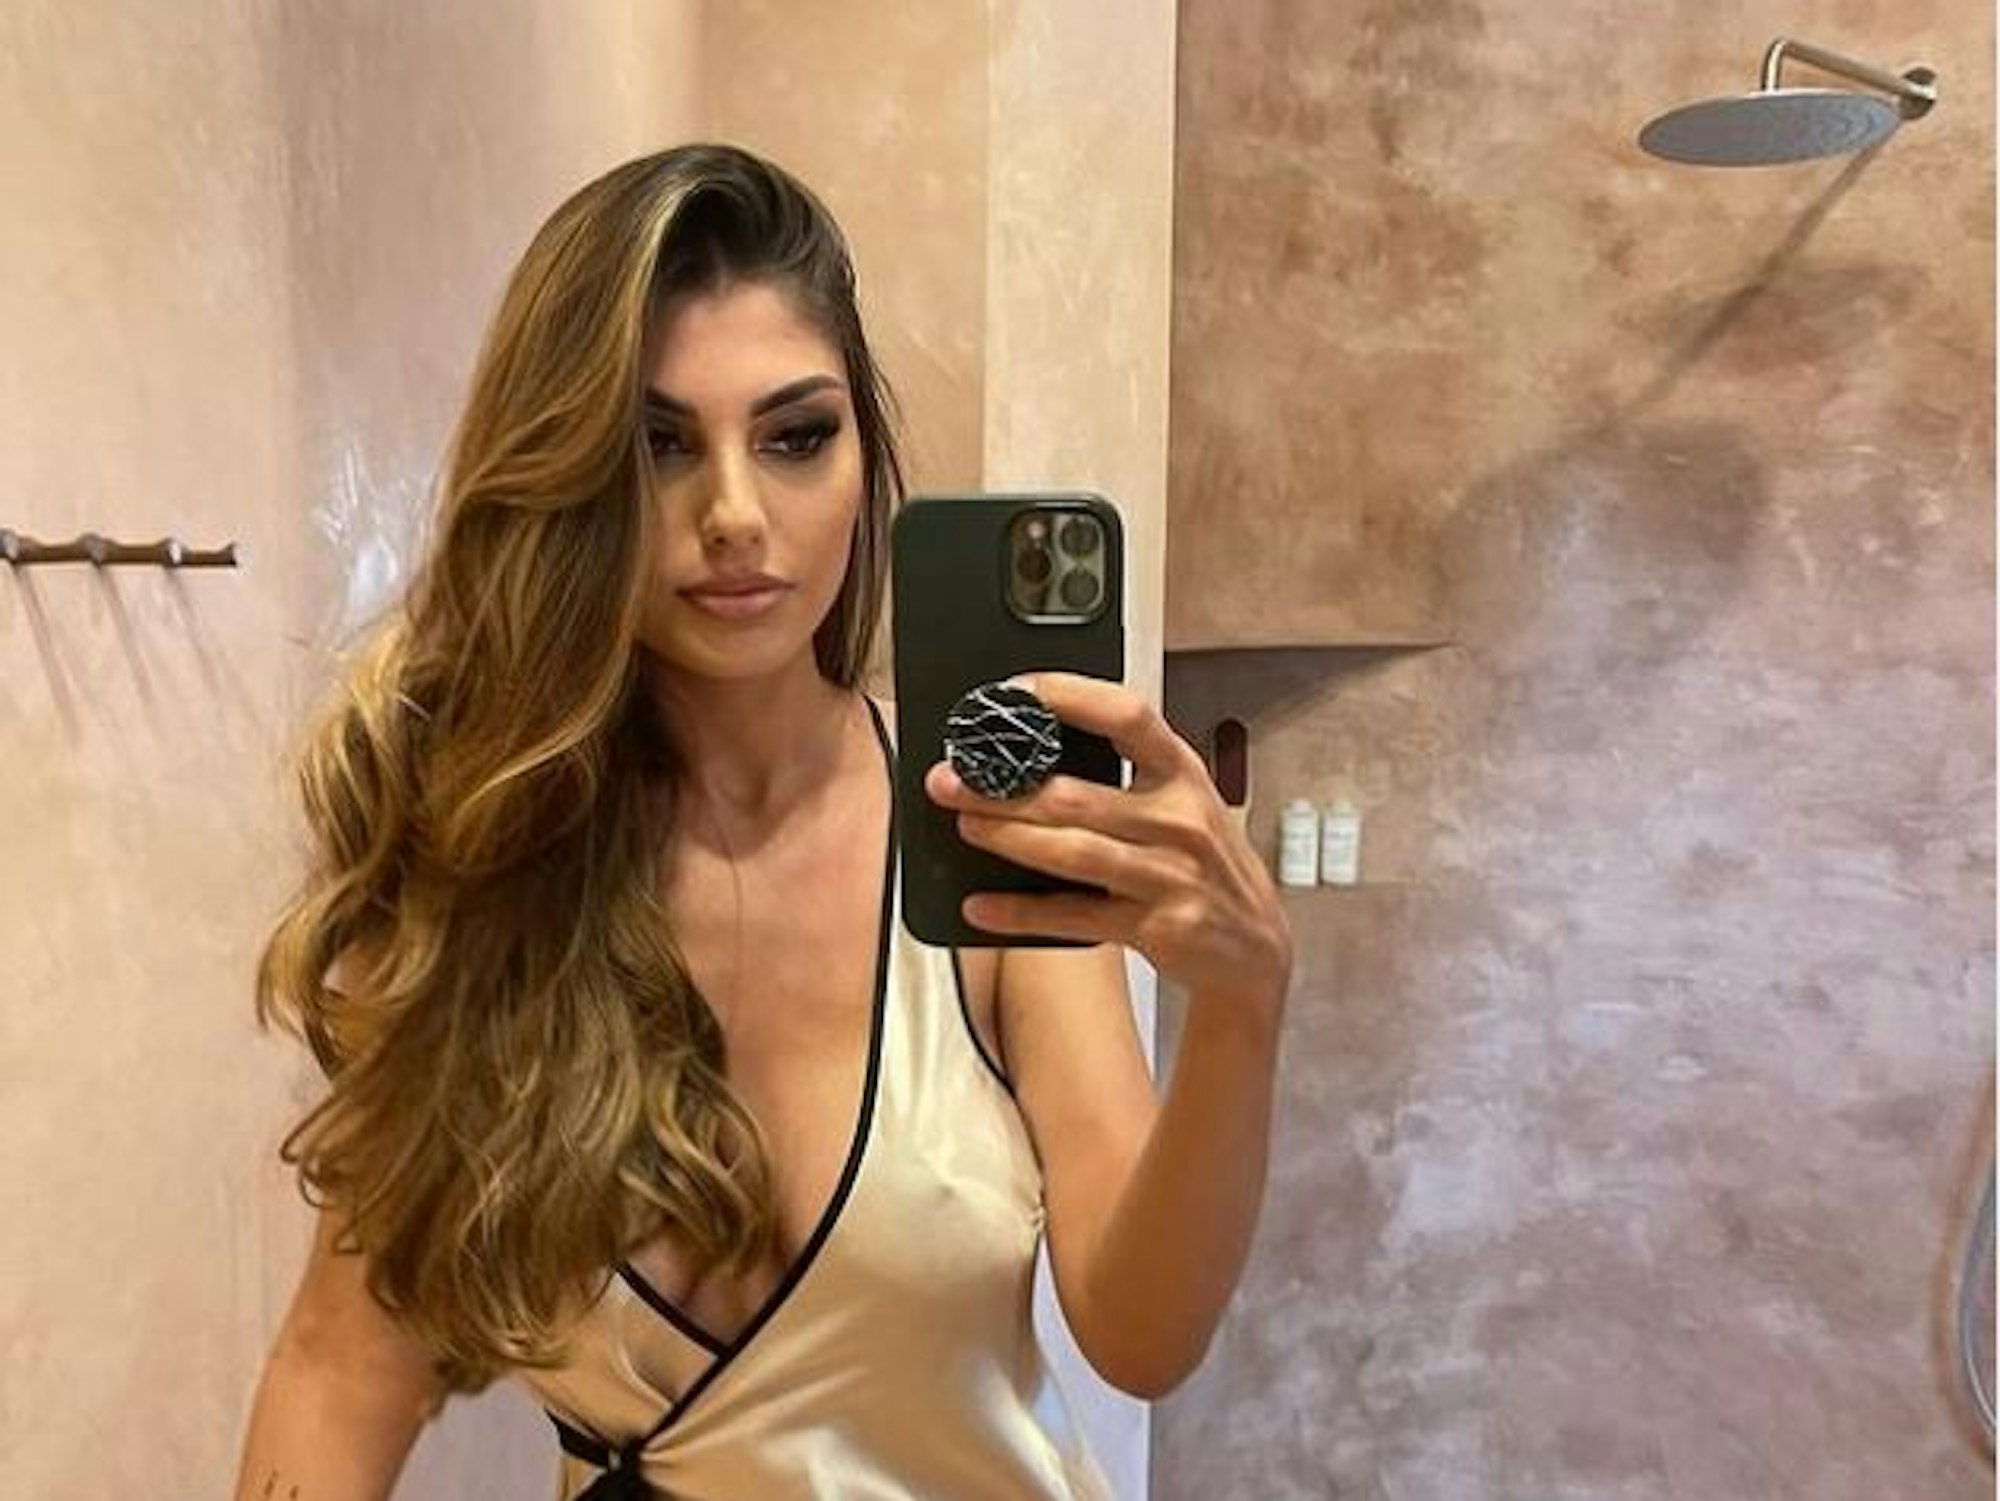 Yeliz Koc, Reality-TV-Star, macht ein Selfie. Das Foto postete sie am 27. Juli 2022 auf ihrem Instagram-Kanal.